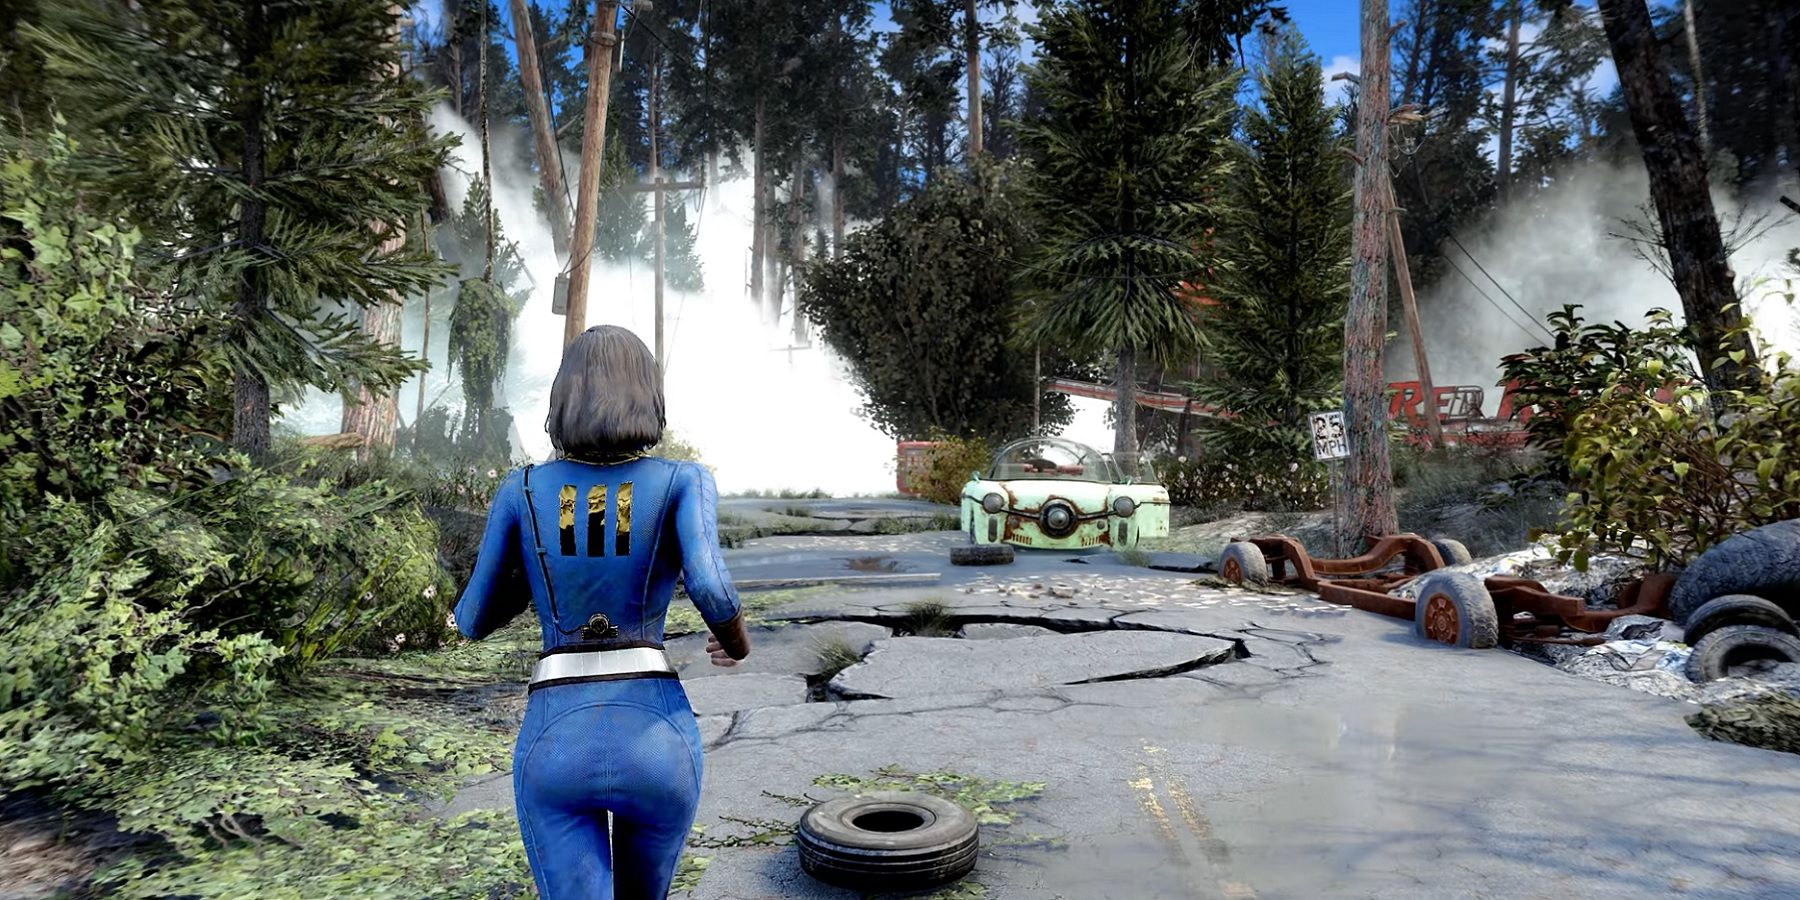 Изображение из Fallout 4, показывающее, как скейтборд бежит по полуразрушенной улице, покрытой листвой.